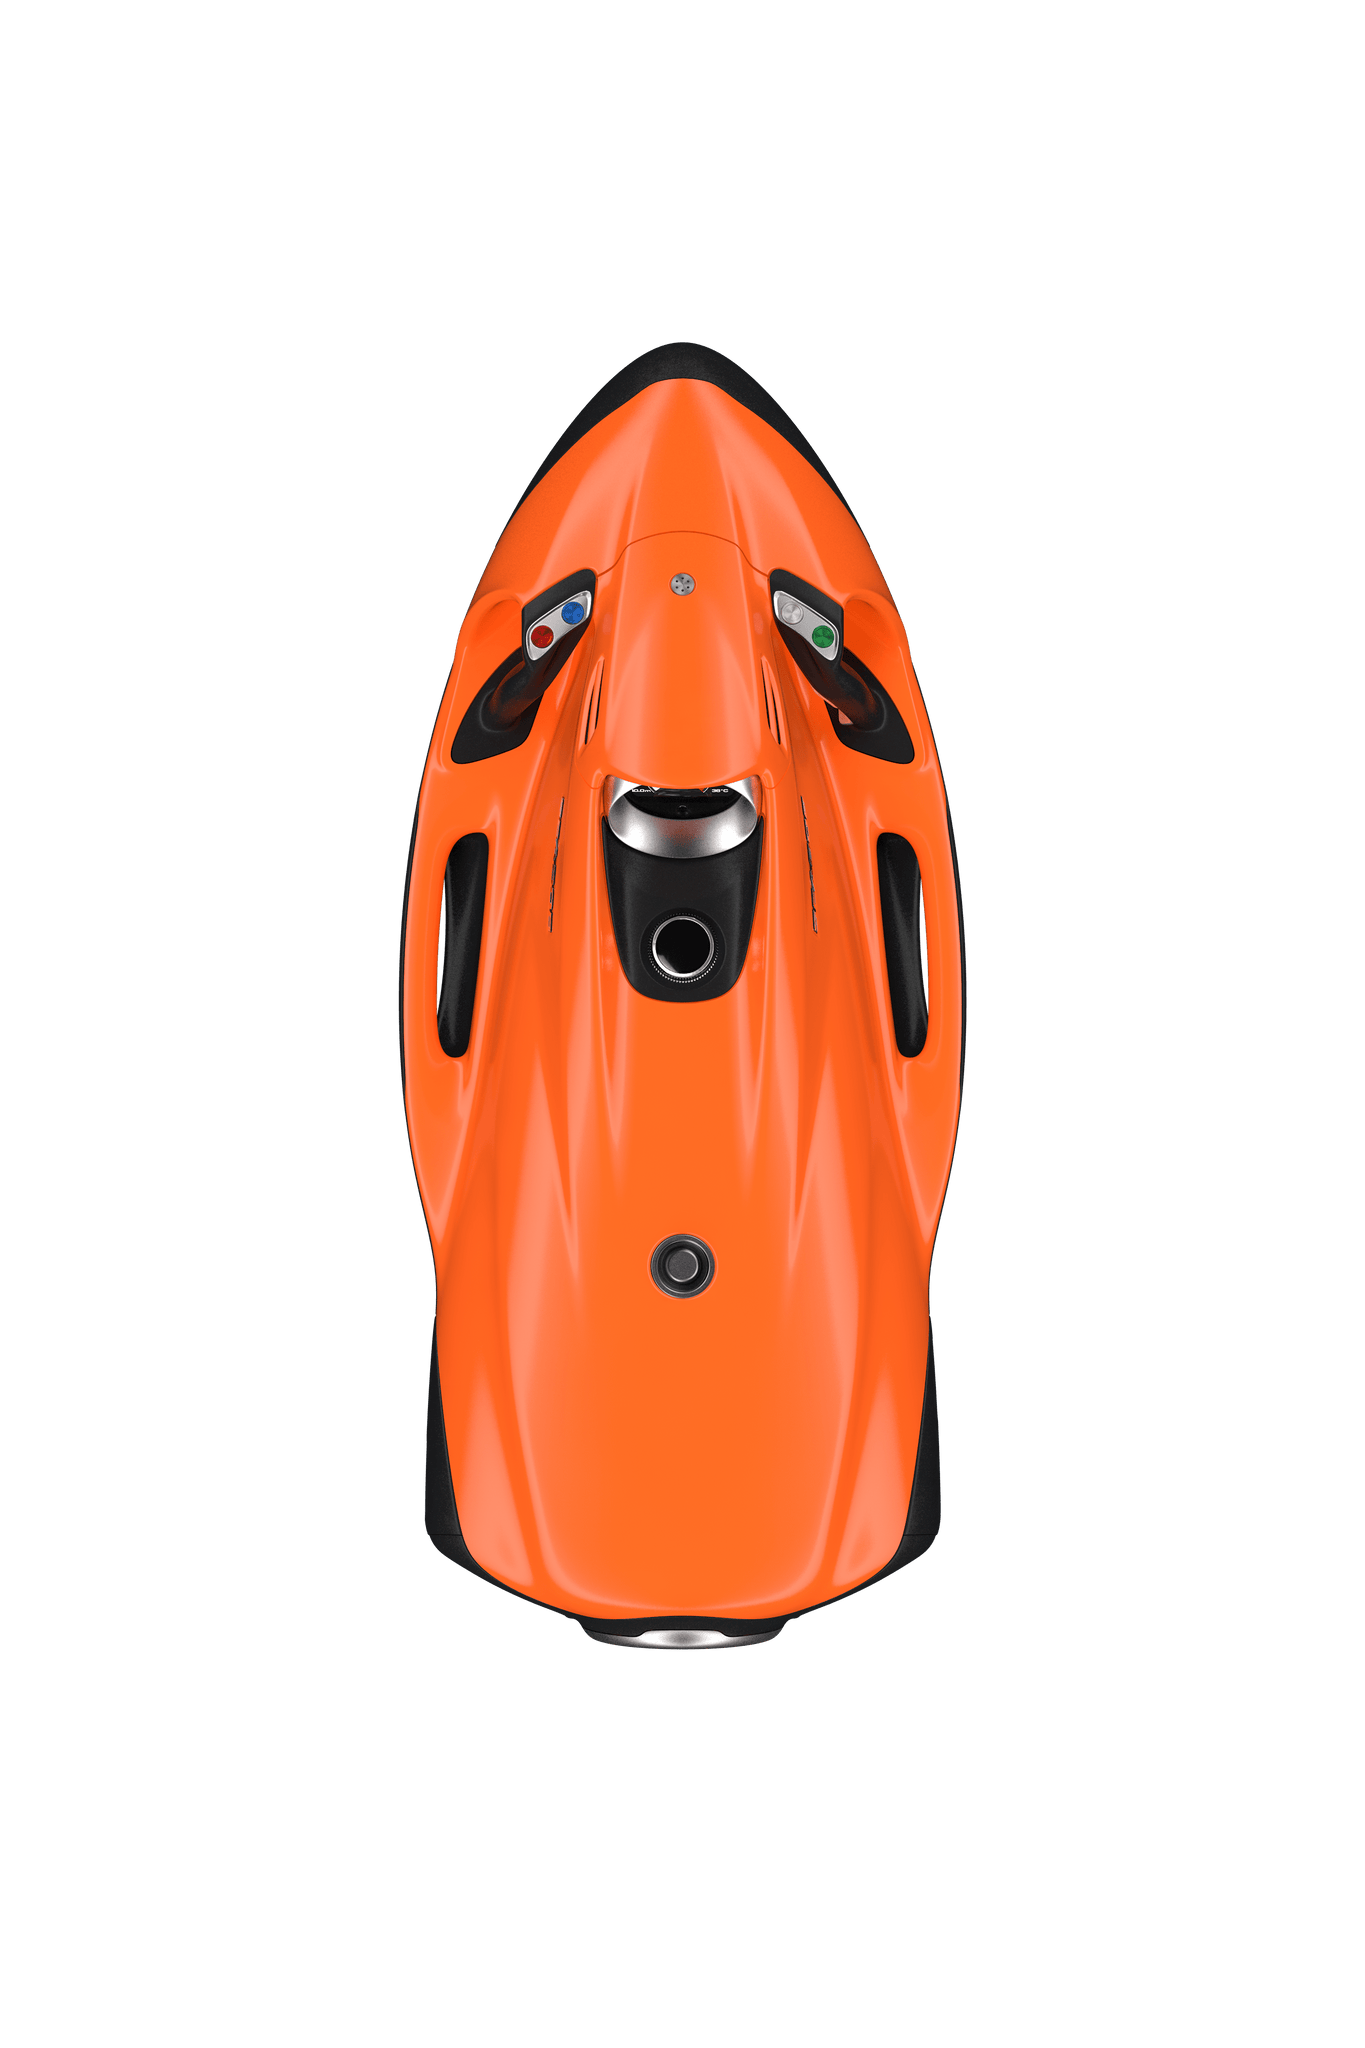 Seabob F5S Lumex Orange CM - Haller Experiences